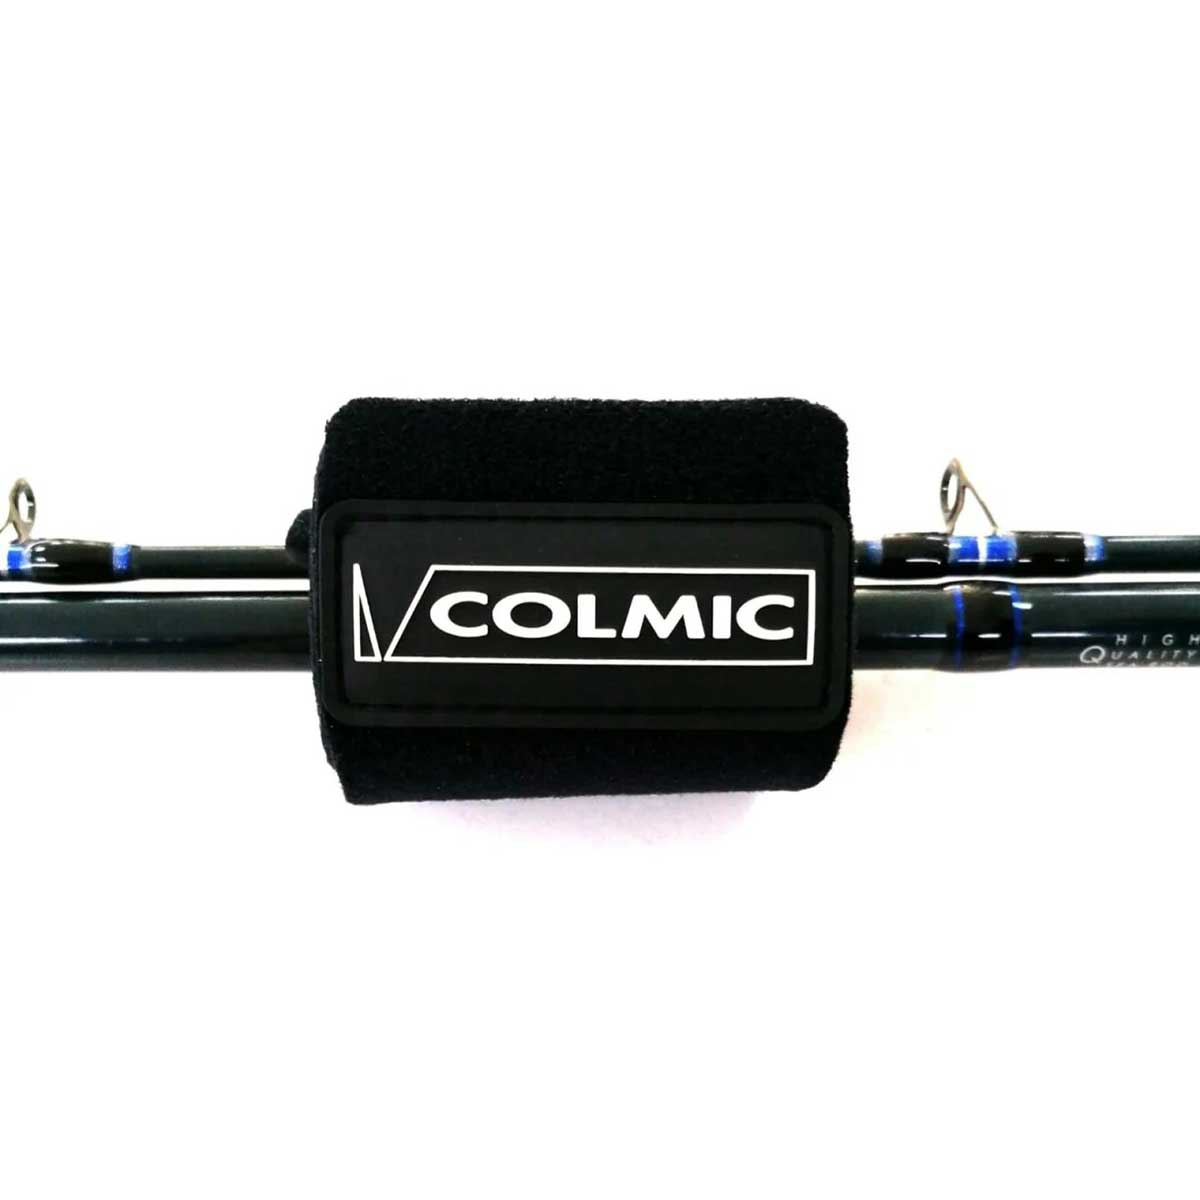 Colmic Kamış Bandı,italyan devi colmic markasının 3 parça surf ve spin kamışları bir arada toplamak için özel olarak üretmiş olduğu üst düzey kaliteli kamış bandı 